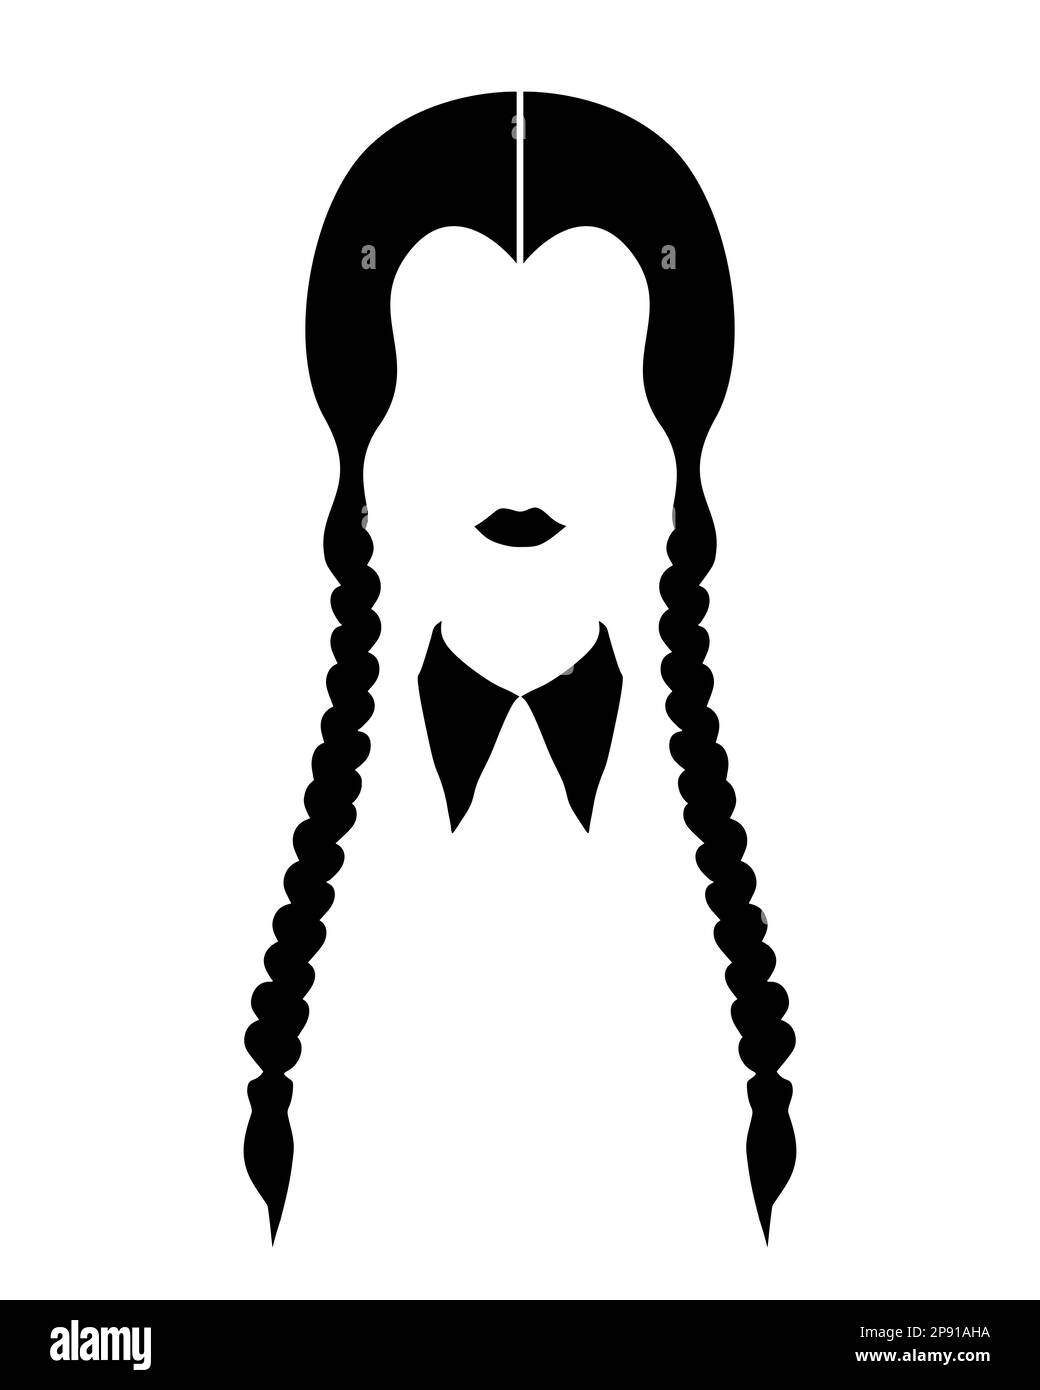 Fille gothique avec deux tresses, silhouette du visage de la femme, vecteur isolé sur fond blanc Illustration de Vecteur